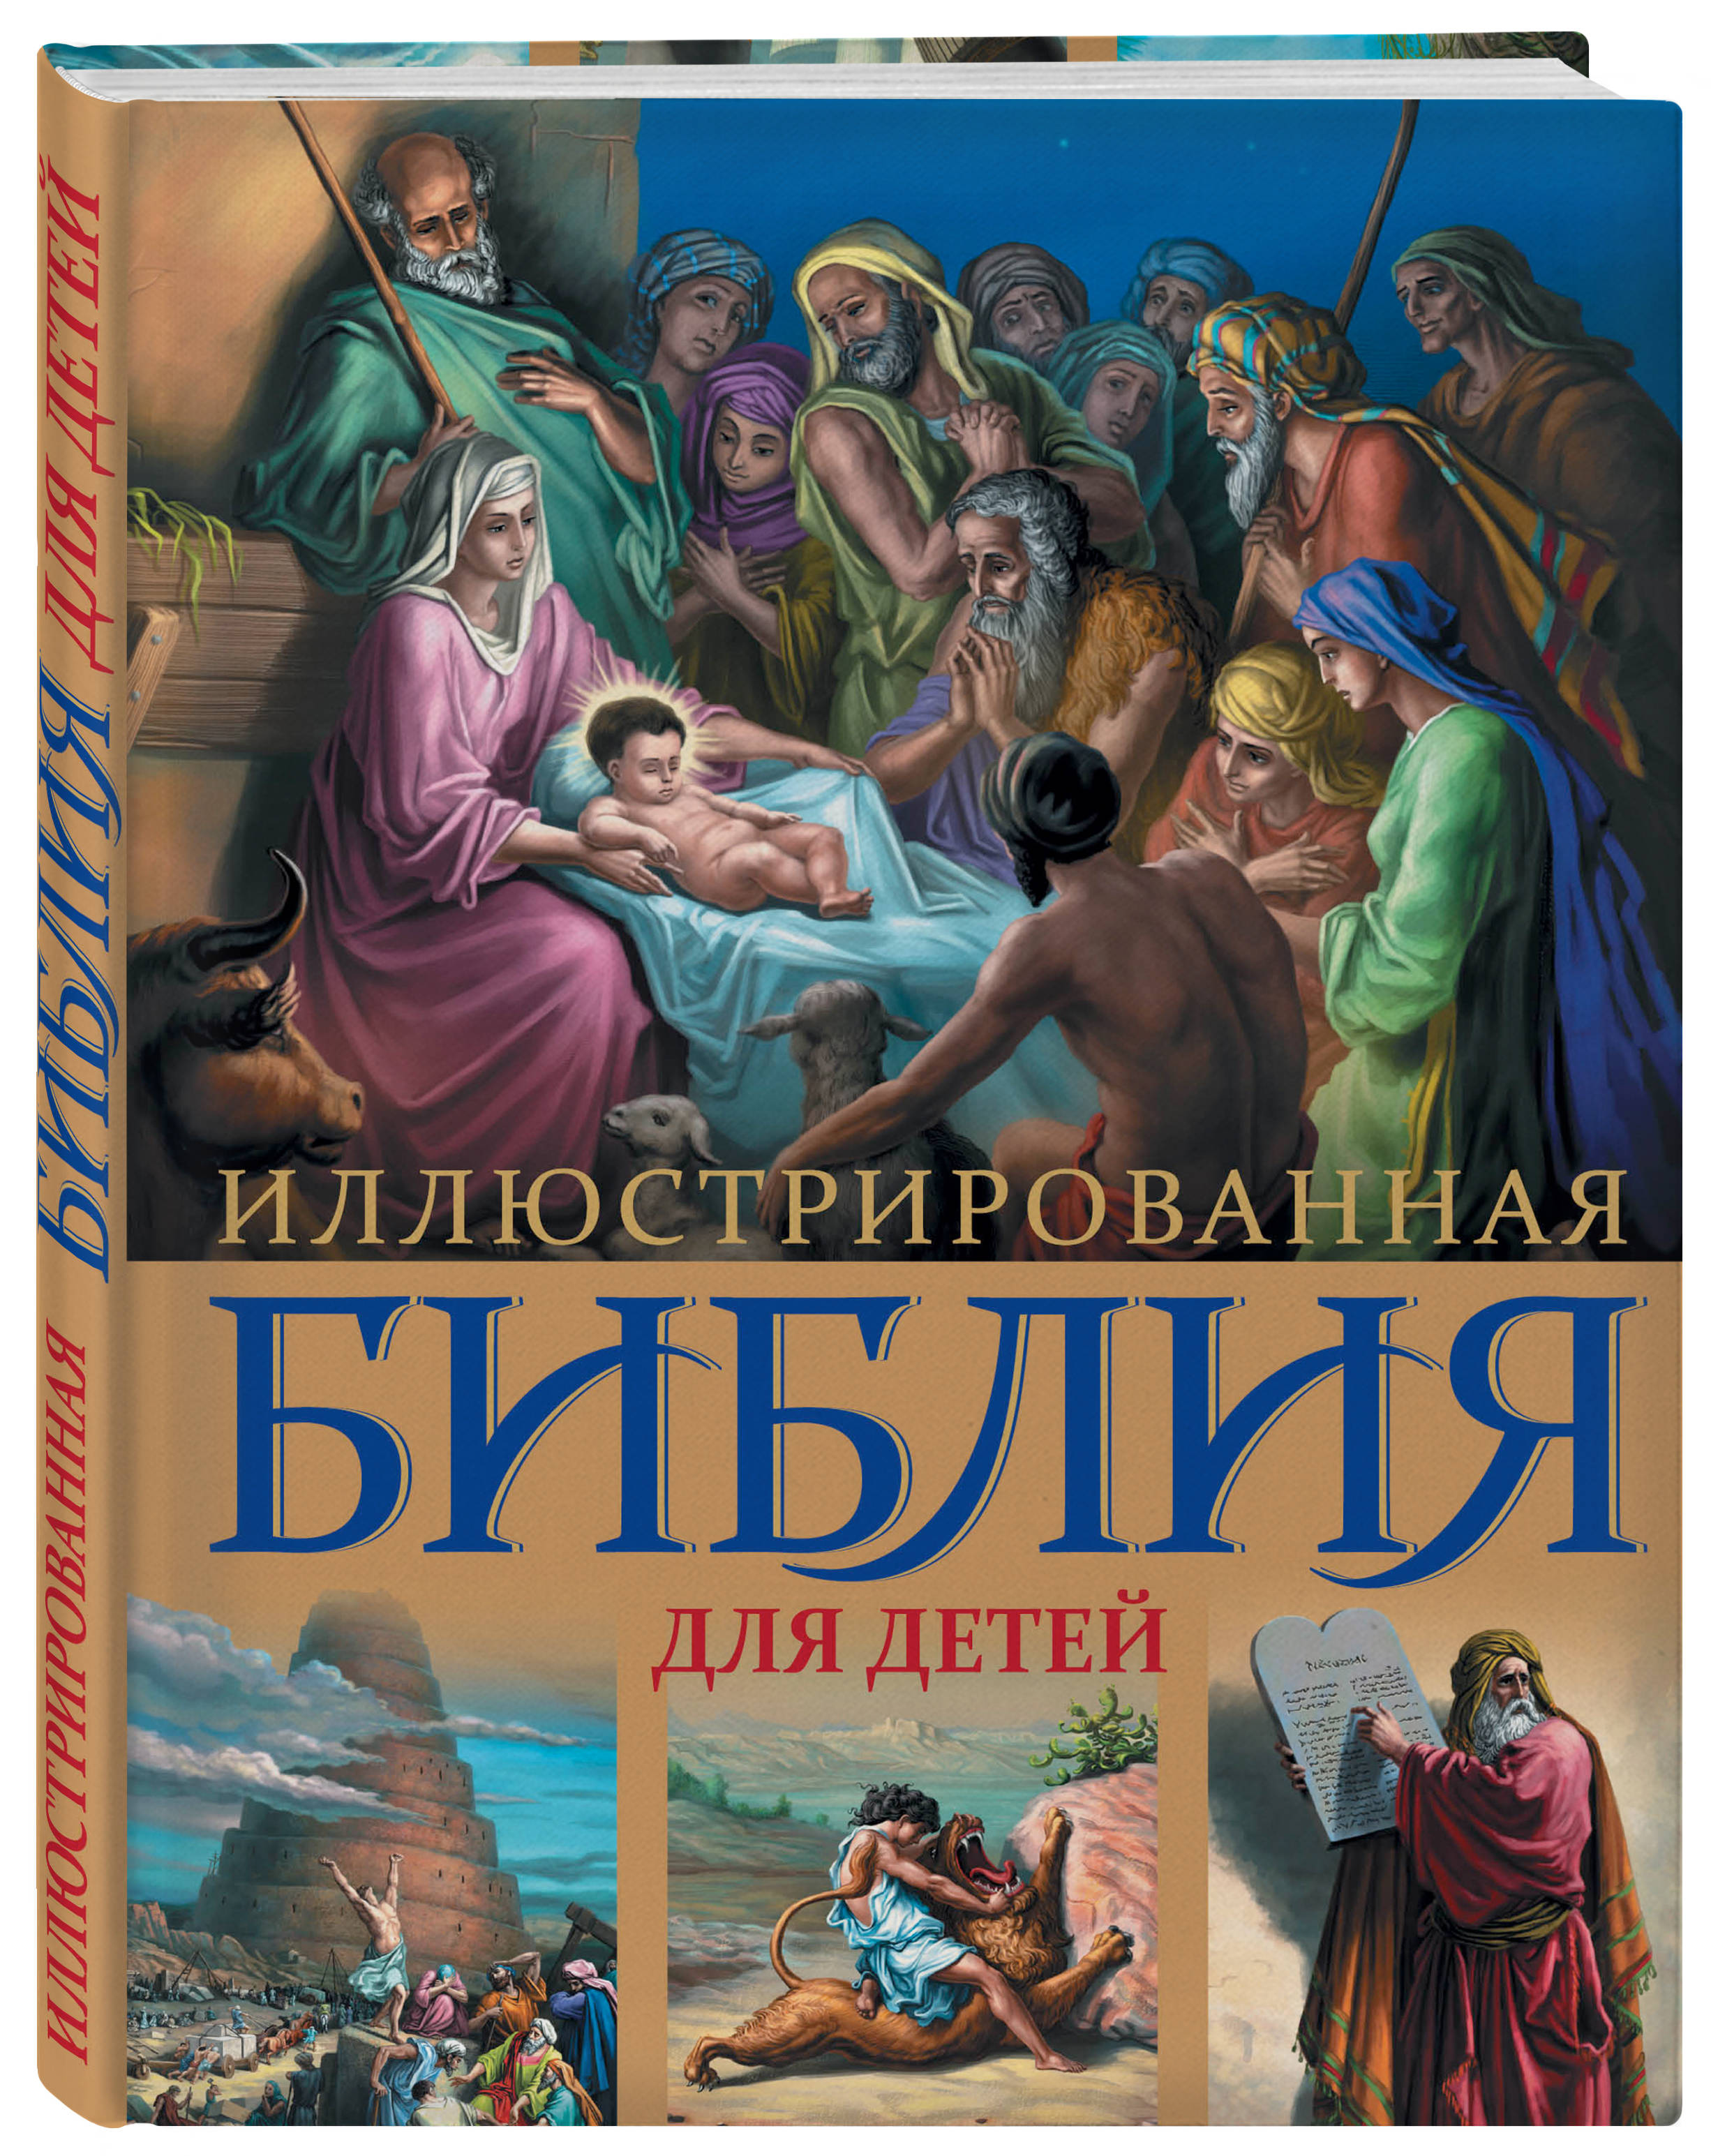 Иллюстрированная Библия для детей: С цветными иллюстрациями от 1С Интерес